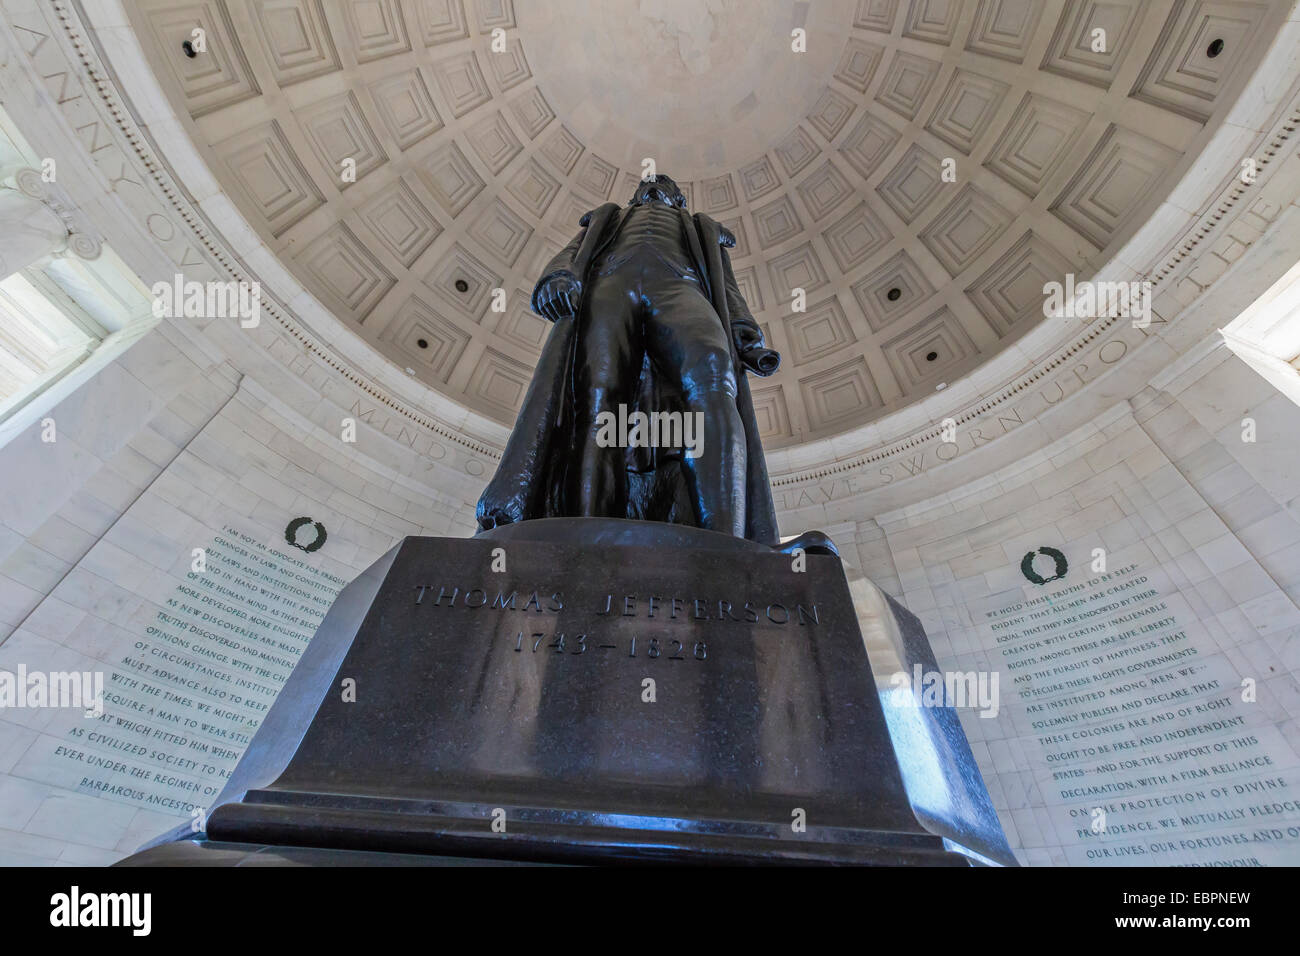 All'interno della rotunda al Jefferson Memorial, Washington D.C., Stati Uniti d'America, America del Nord Foto Stock